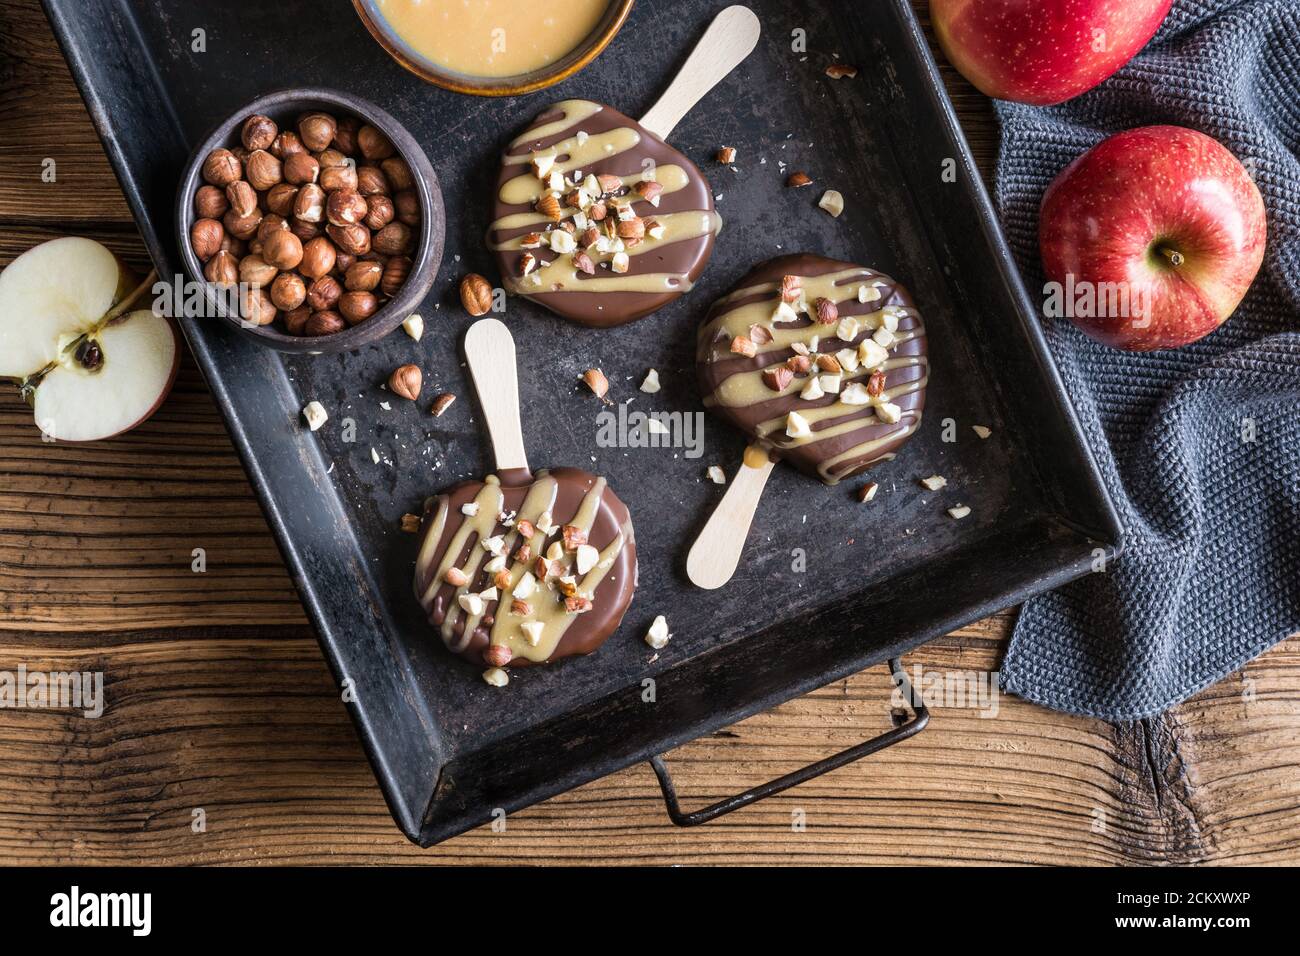 Popsicle de pomme trempée dans du chocolat et du caramel, parsemée de noisettes hachées Banque D'Images